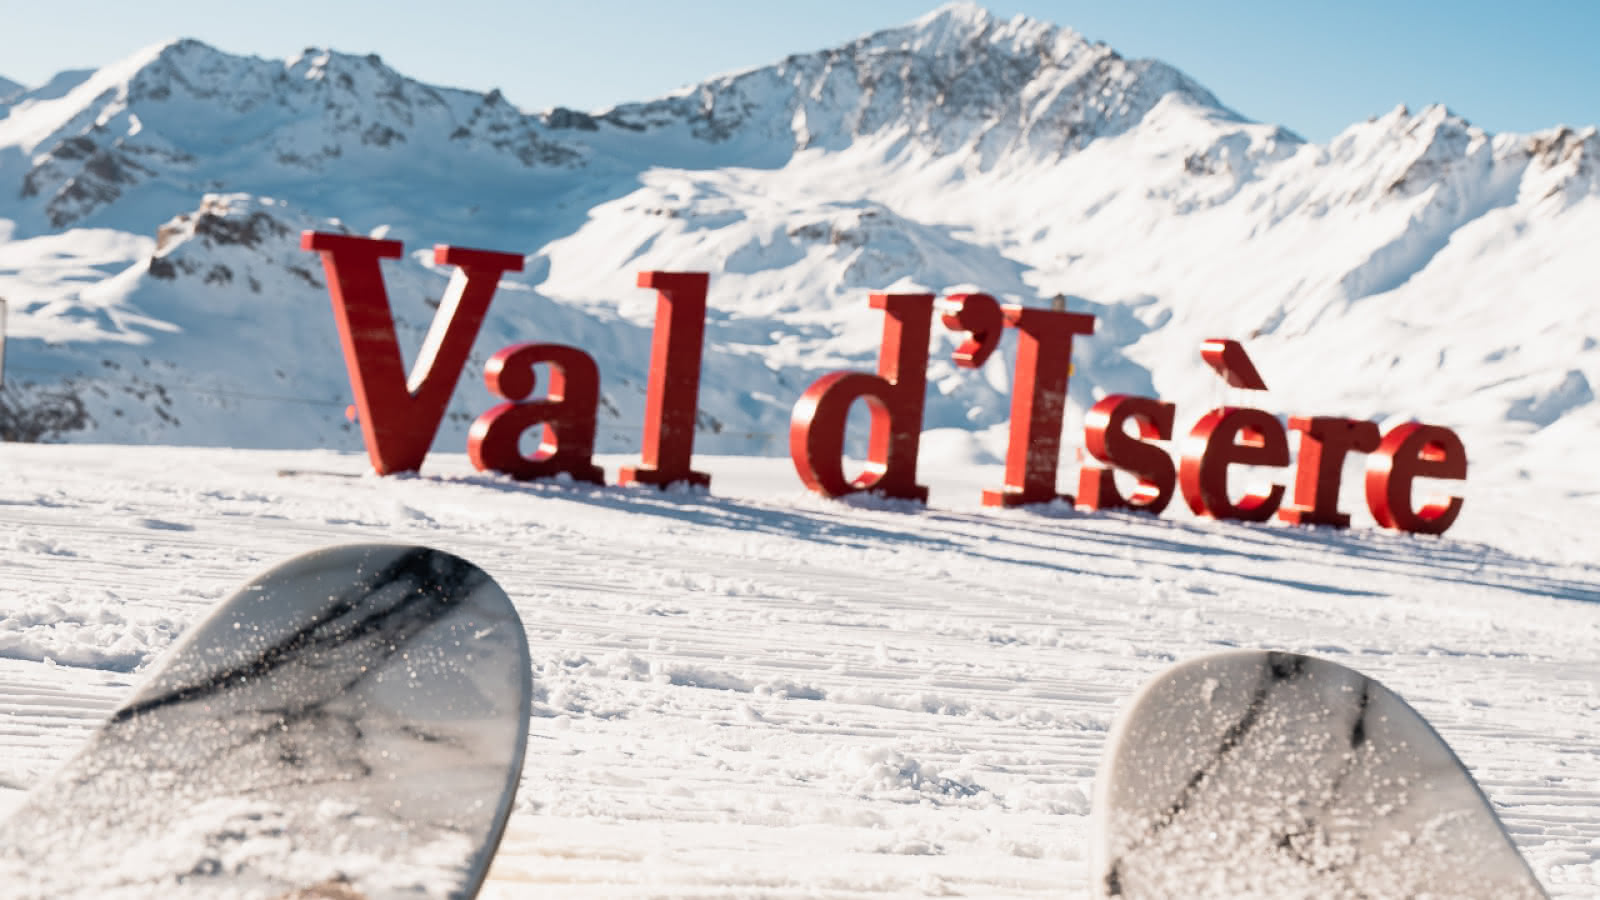 C'est au sommet du télésiège de Grand Près que vous retrouverez les lettres géantes de Val d'Isère.